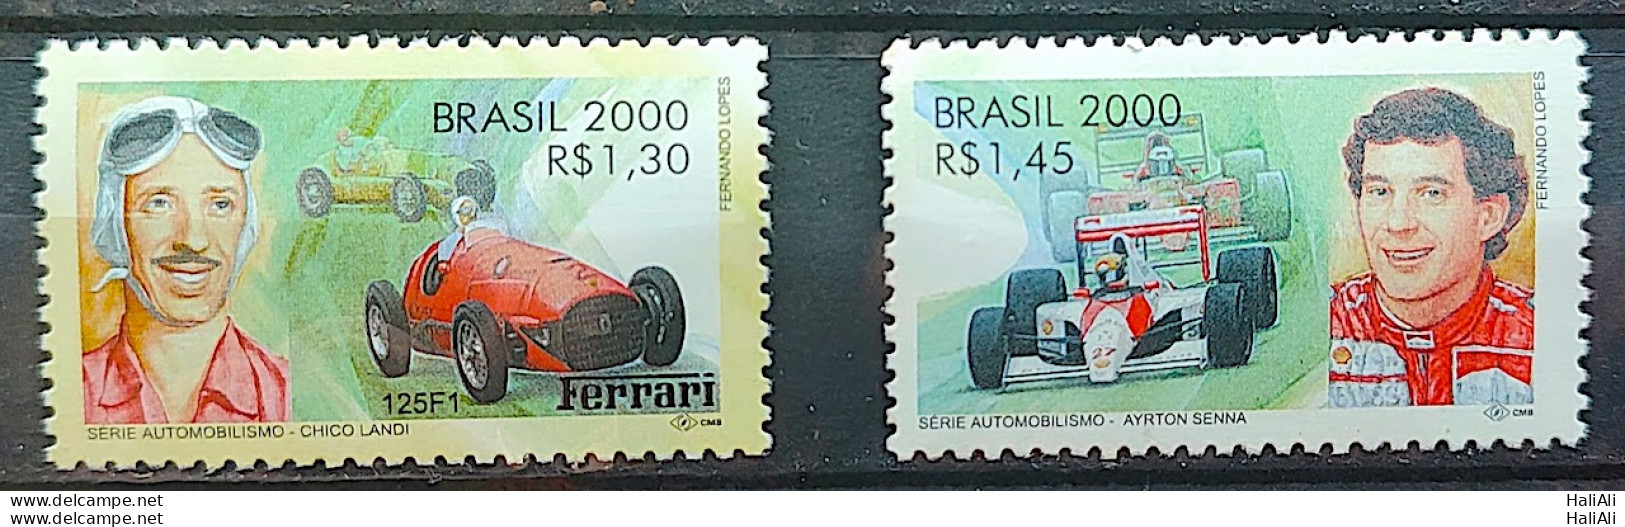 C 2345 Brazil Stamp Chico Landi Ayrton Senna Formula 1 Car 2000 - Unused Stamps